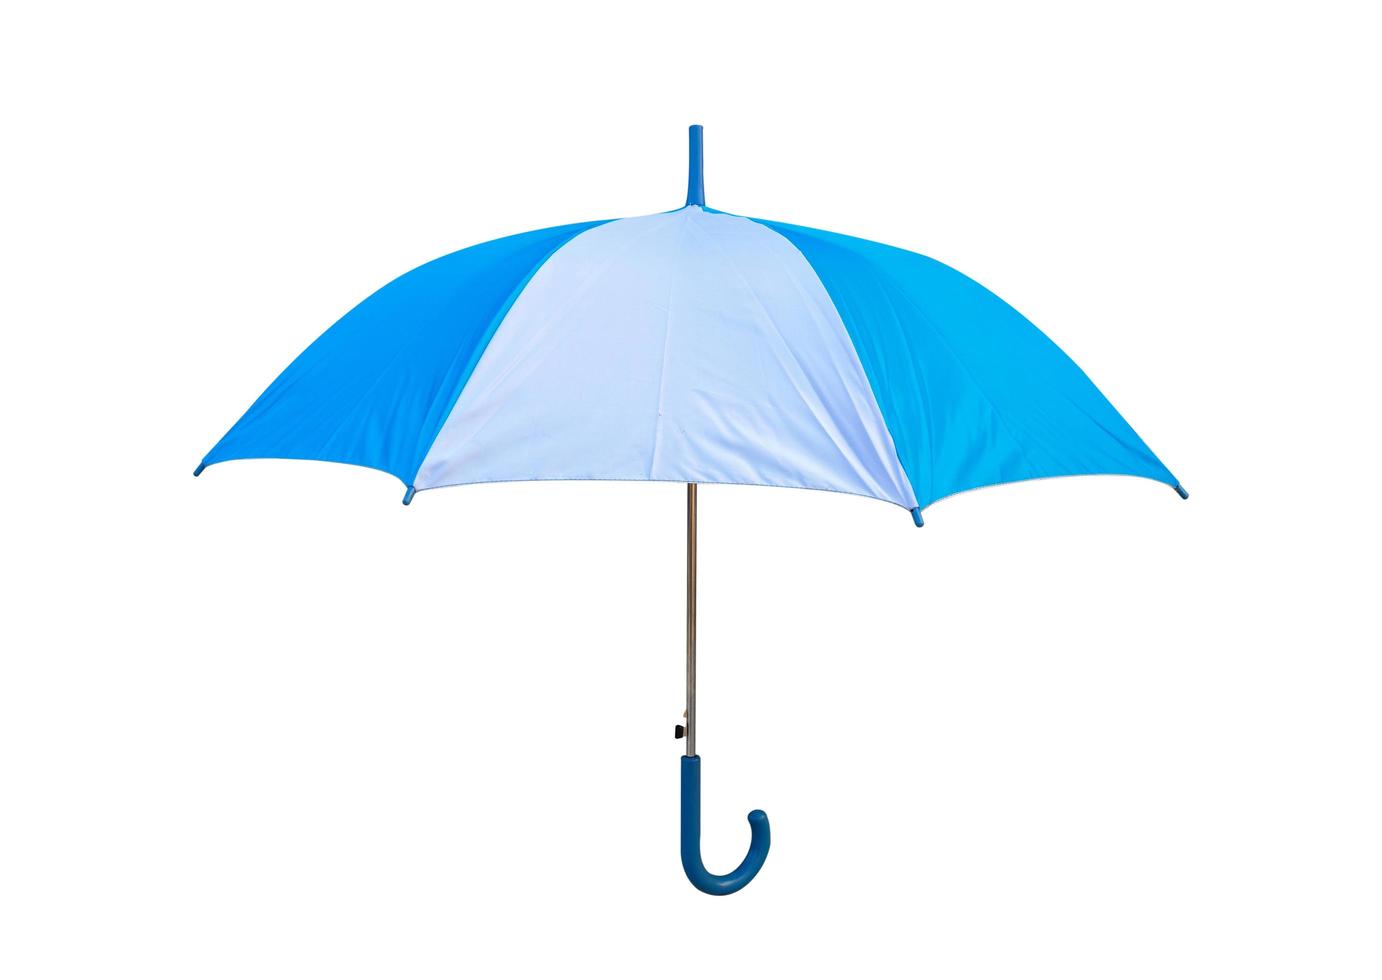 isolated blue and white umbrella on white background photo